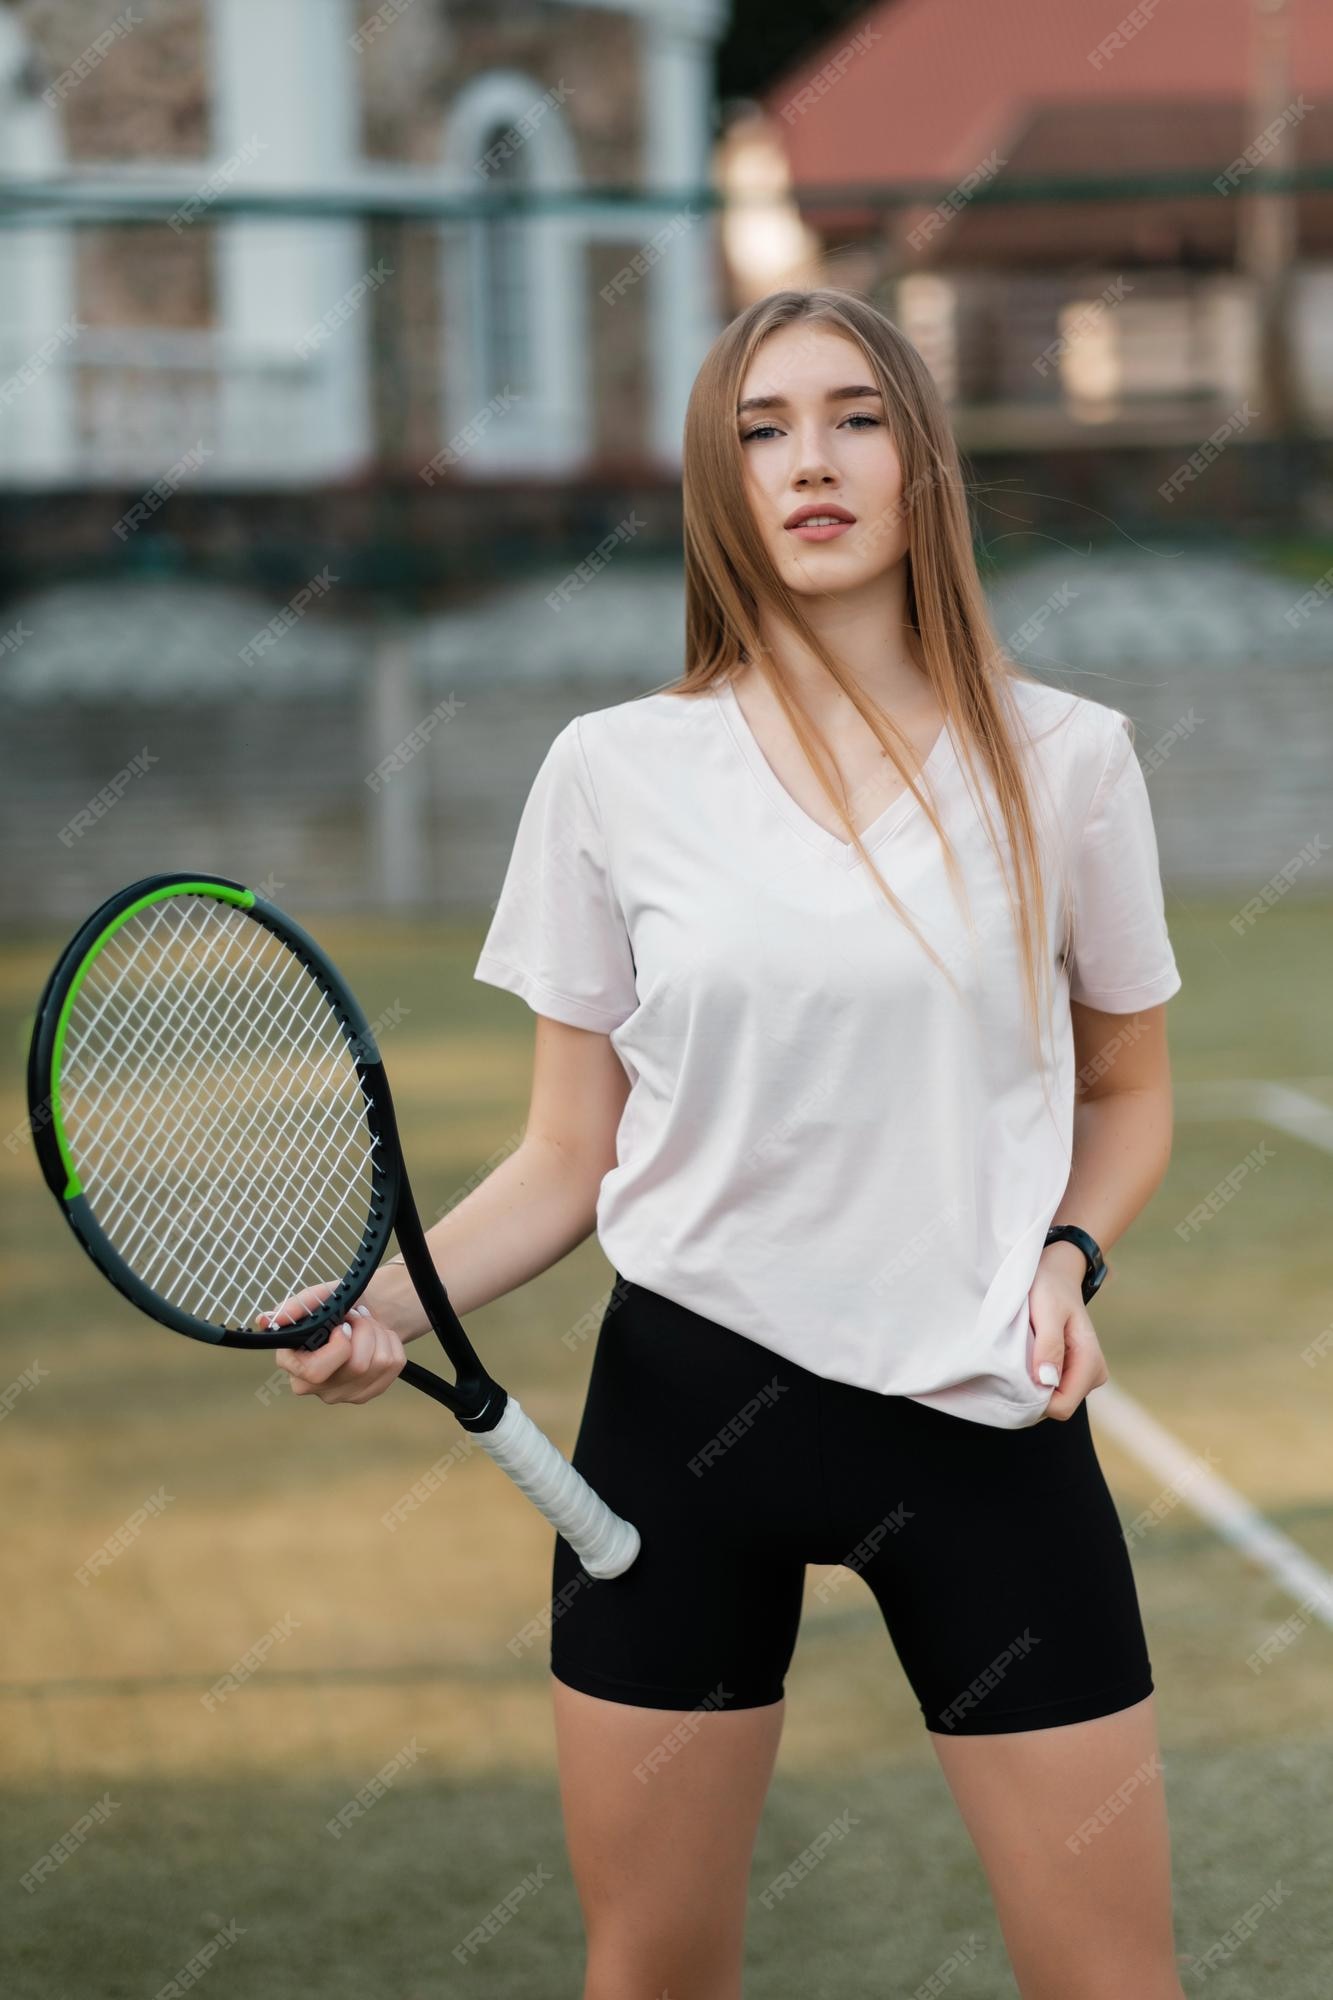 Chica atleta en una camiseta blanca y pantalones ajustados negros con una raqueta en la cancha de tenis de y deporte | Foto Premium